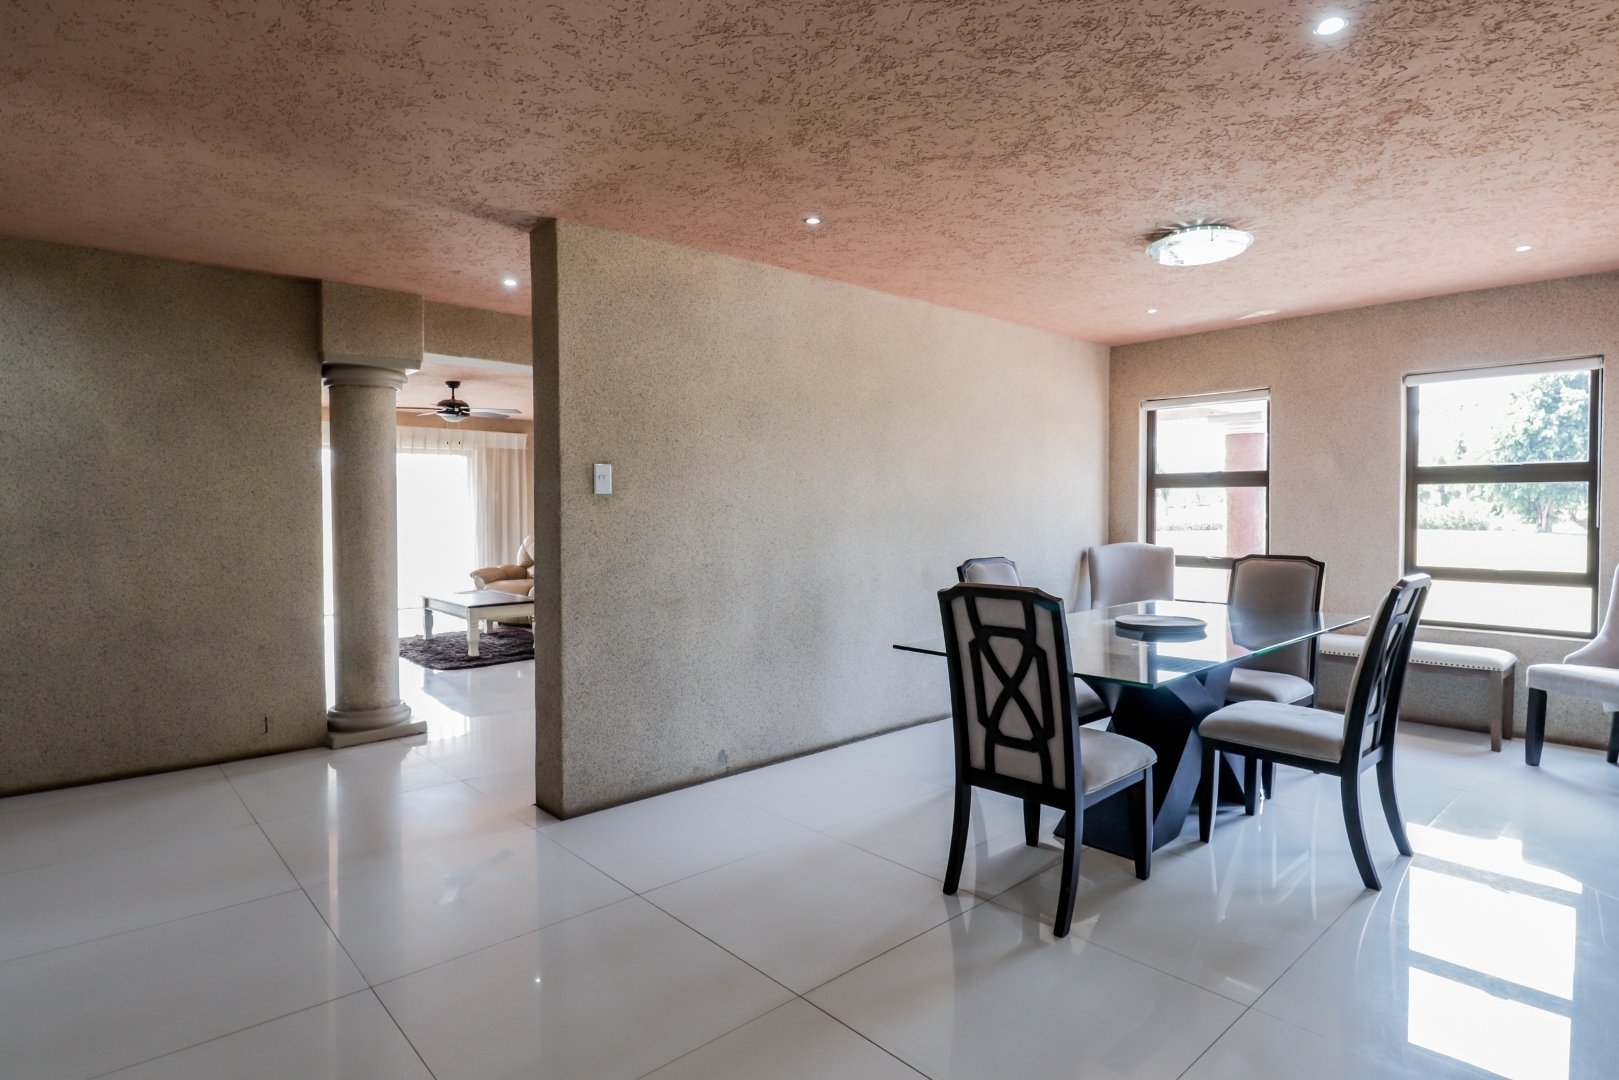 5 Bedroom Property for Sale in Derdepoort Gauteng